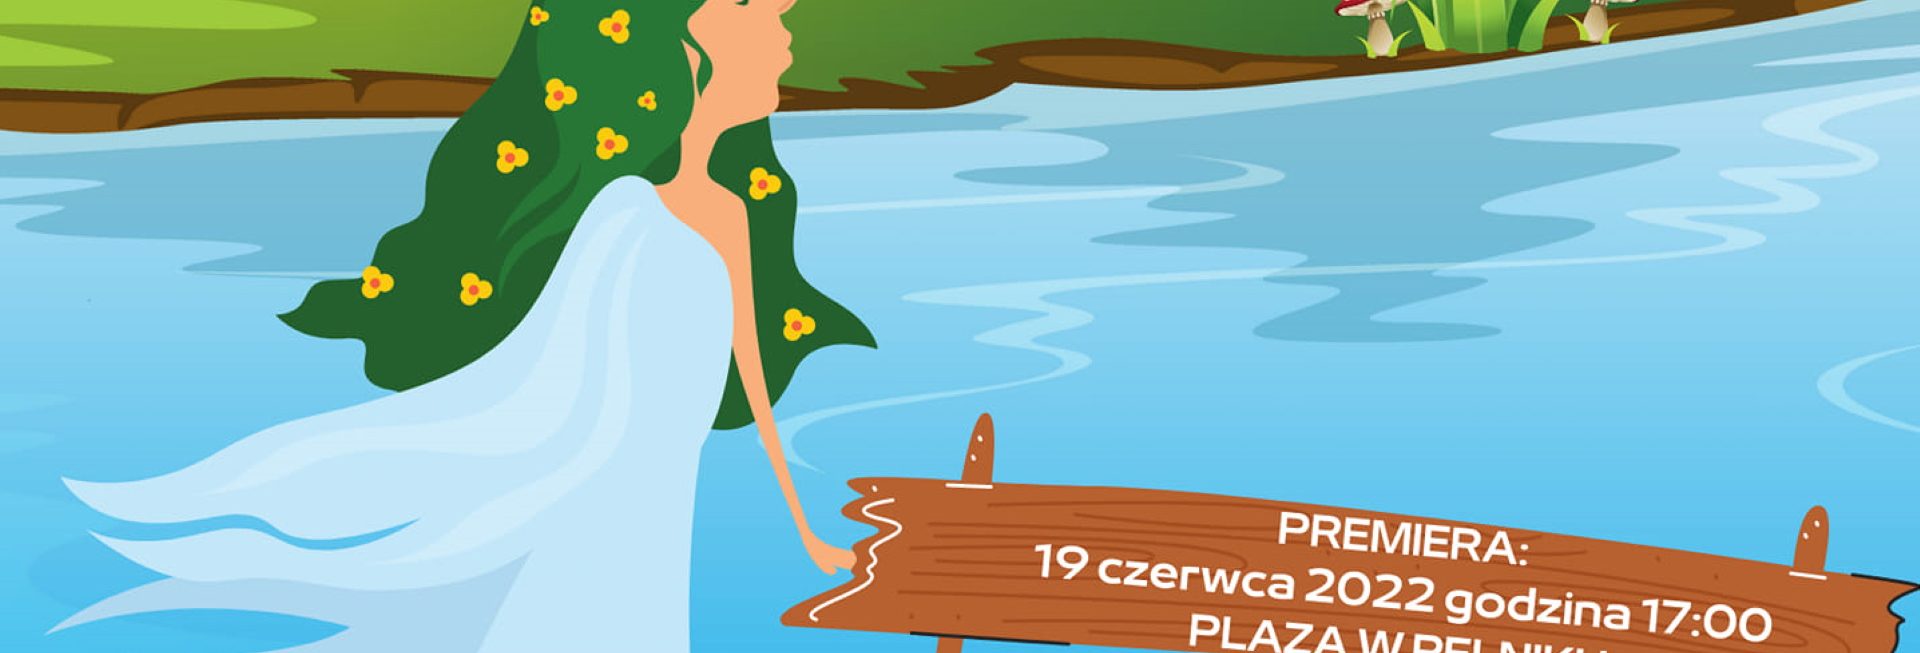 Plakat graficzny zapraszający do miejscowości Pelnik w gminie Łukta w powiecie ostródzkim na plenerowy spektakl "Rusałka z jeziora Isąg" Pelnik 2022.